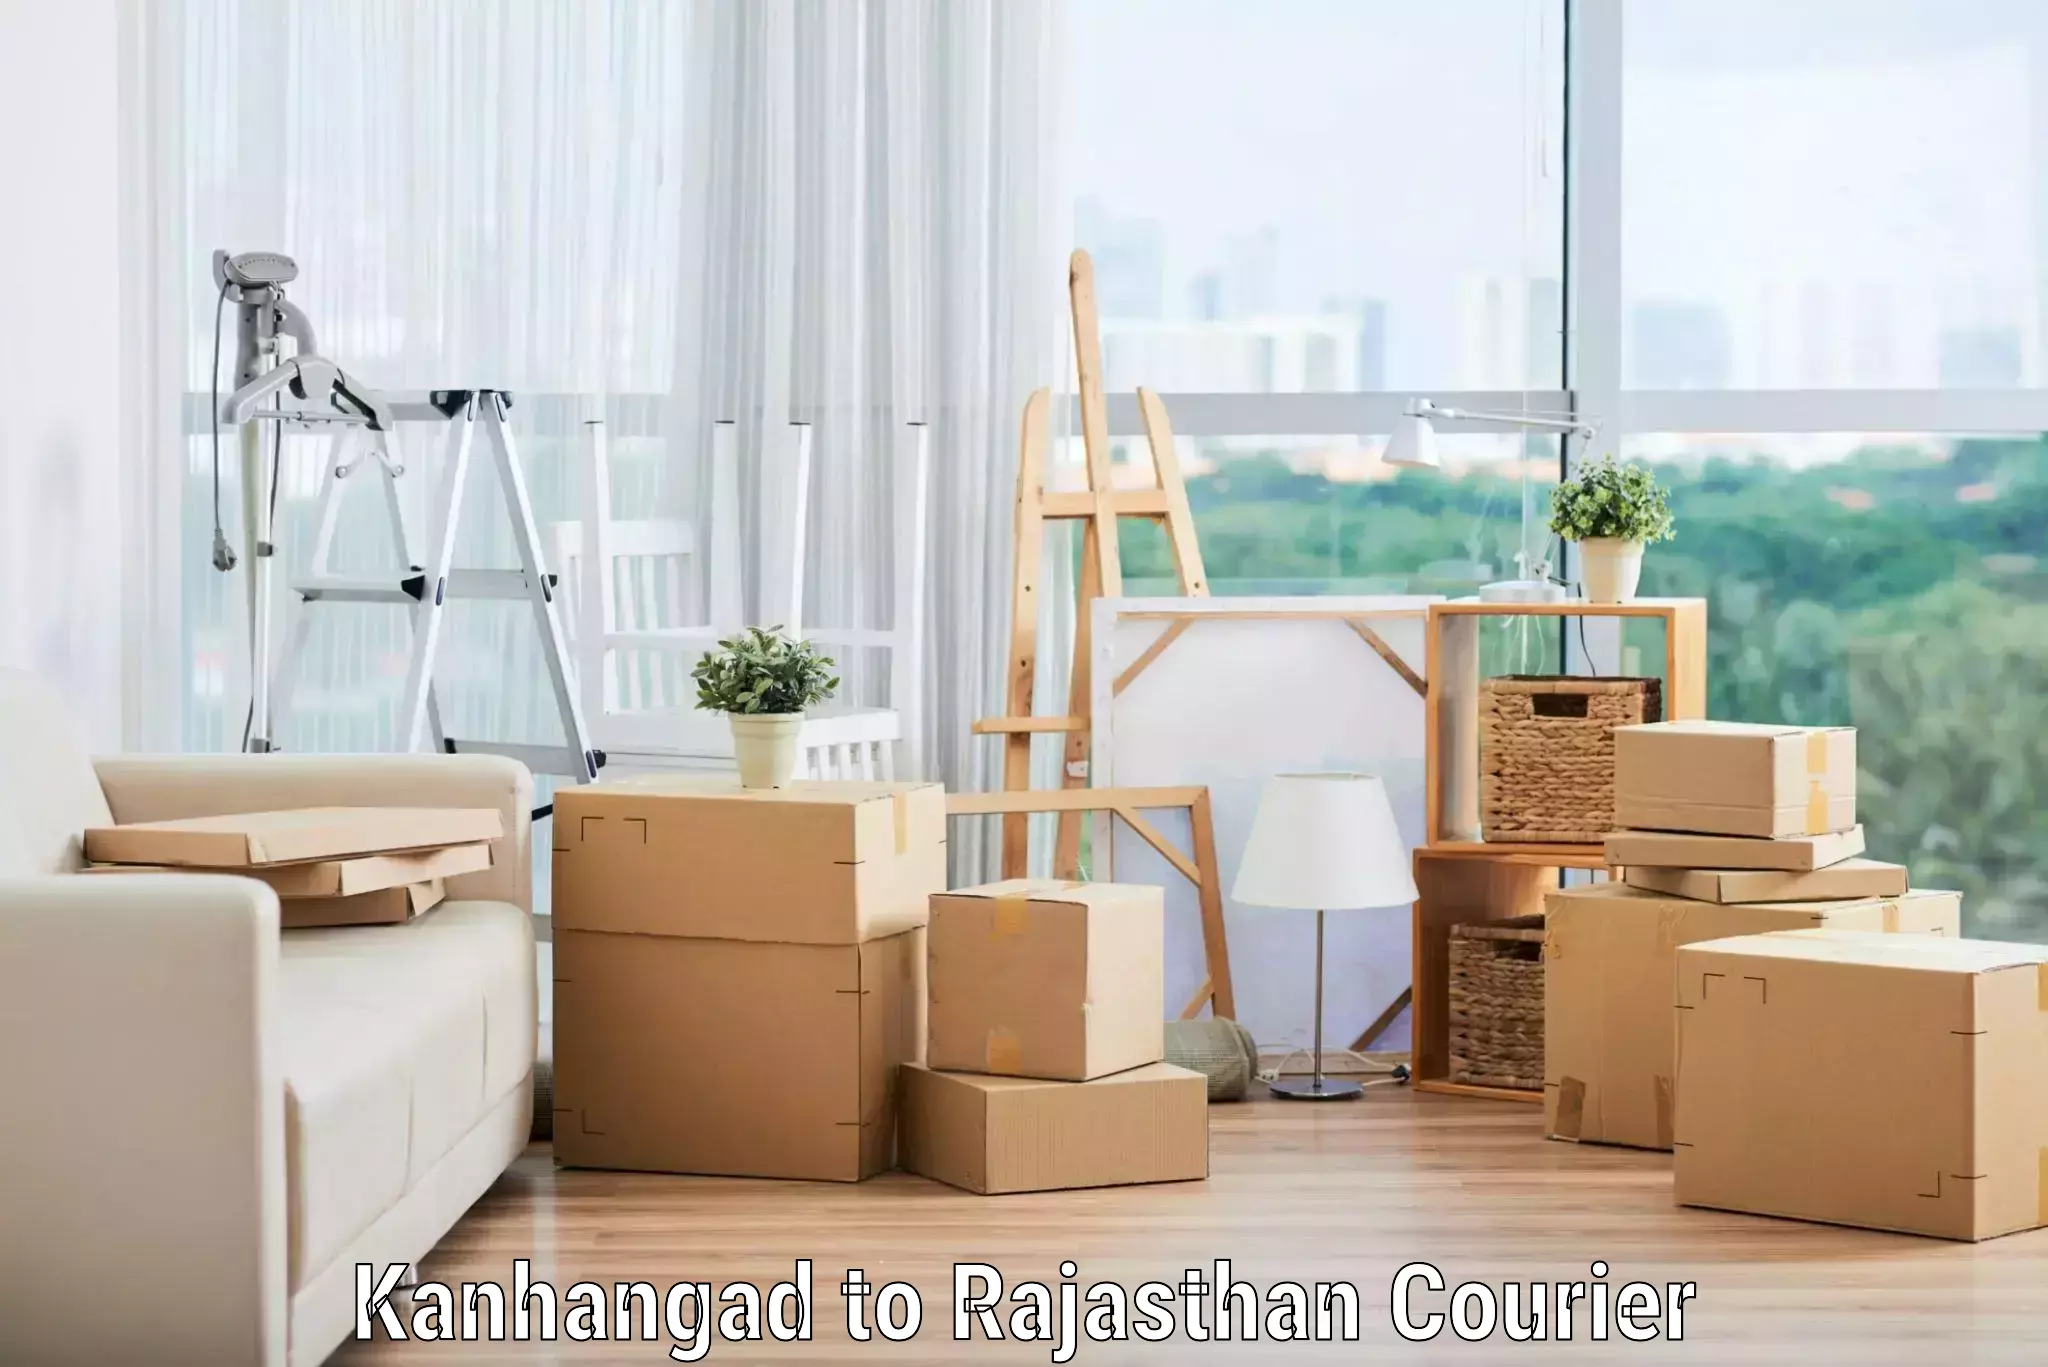 Furniture transport service Kanhangad to Rajasthan